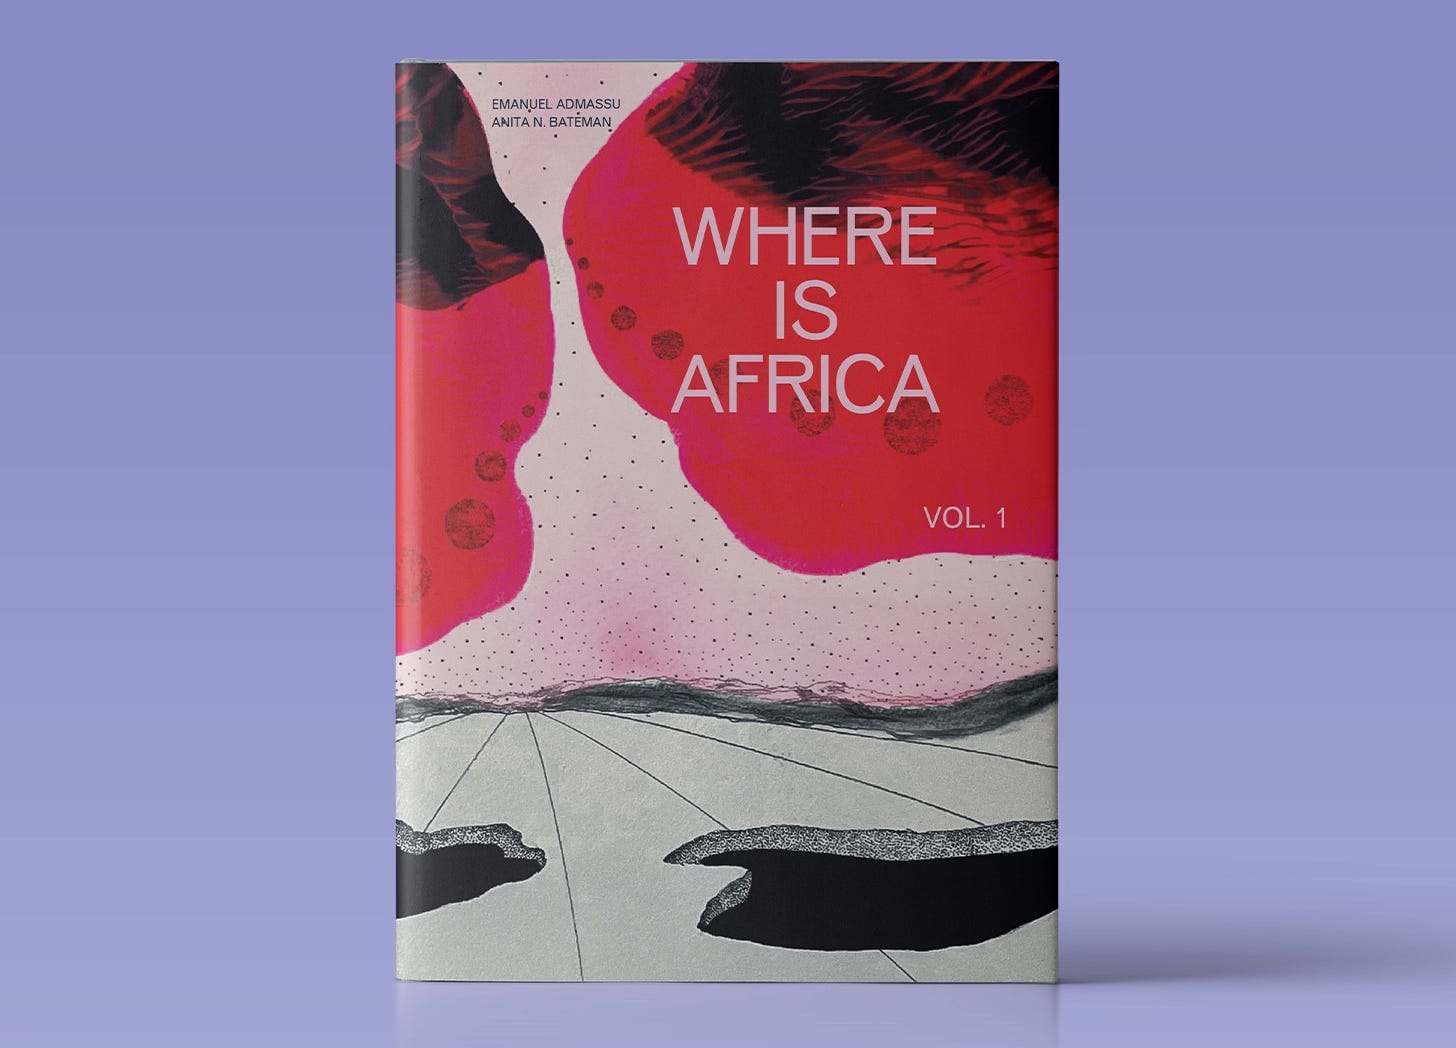 The Frontier Interview: “Where Is Africa” with Anita N. Bateman & Emanuel Admassu